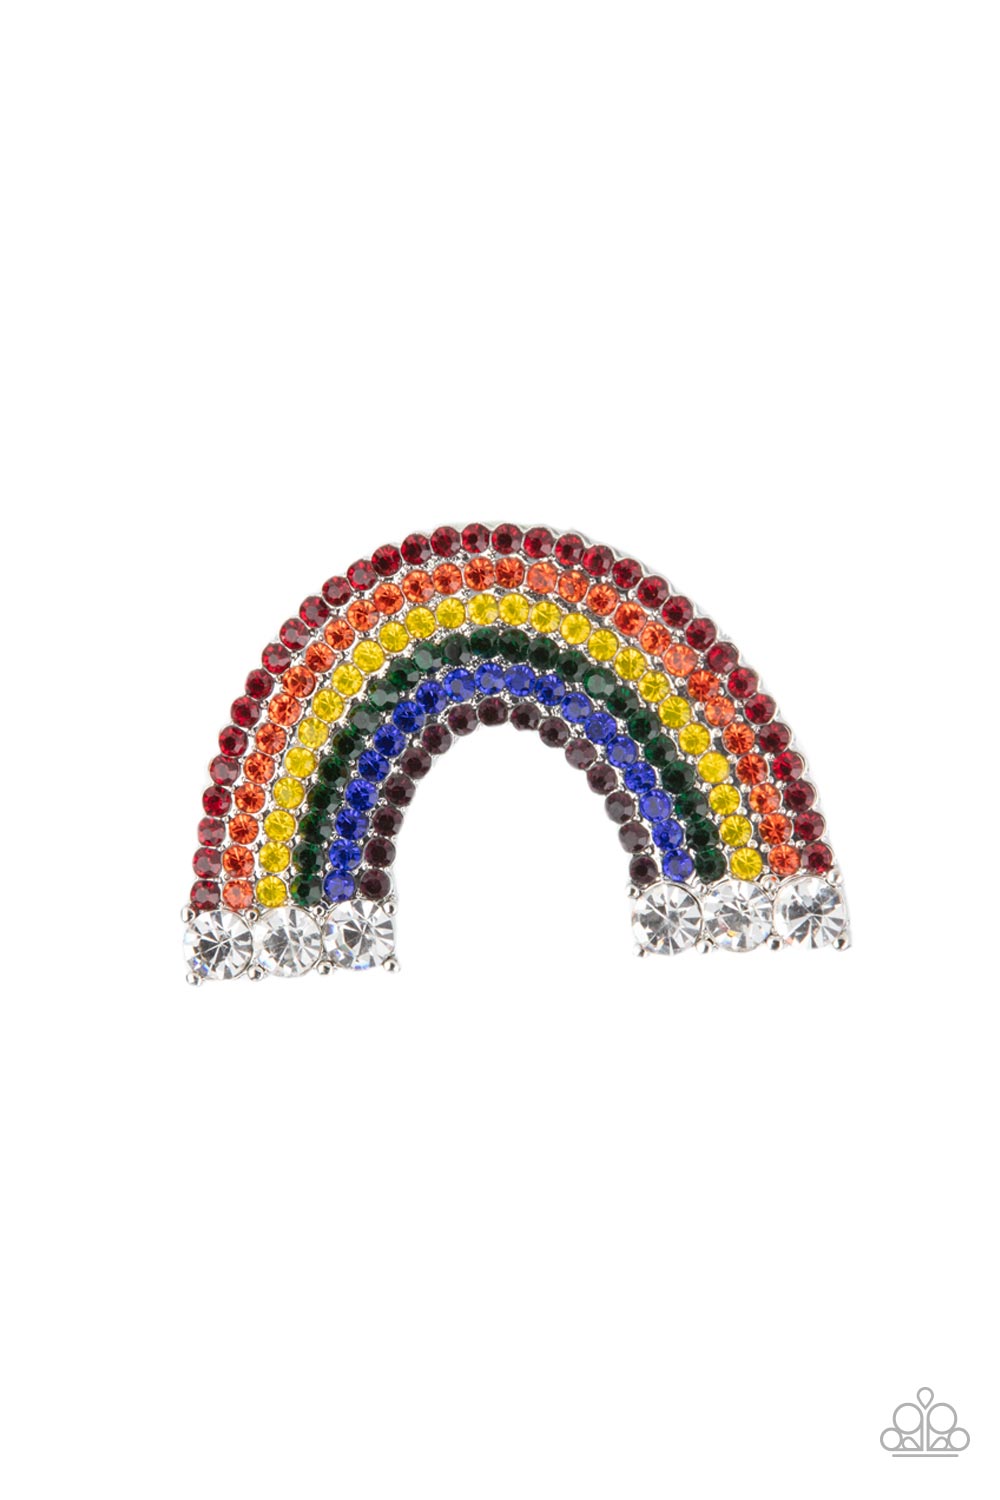 Iridescent Rainbow Rhinestone Hair Clips